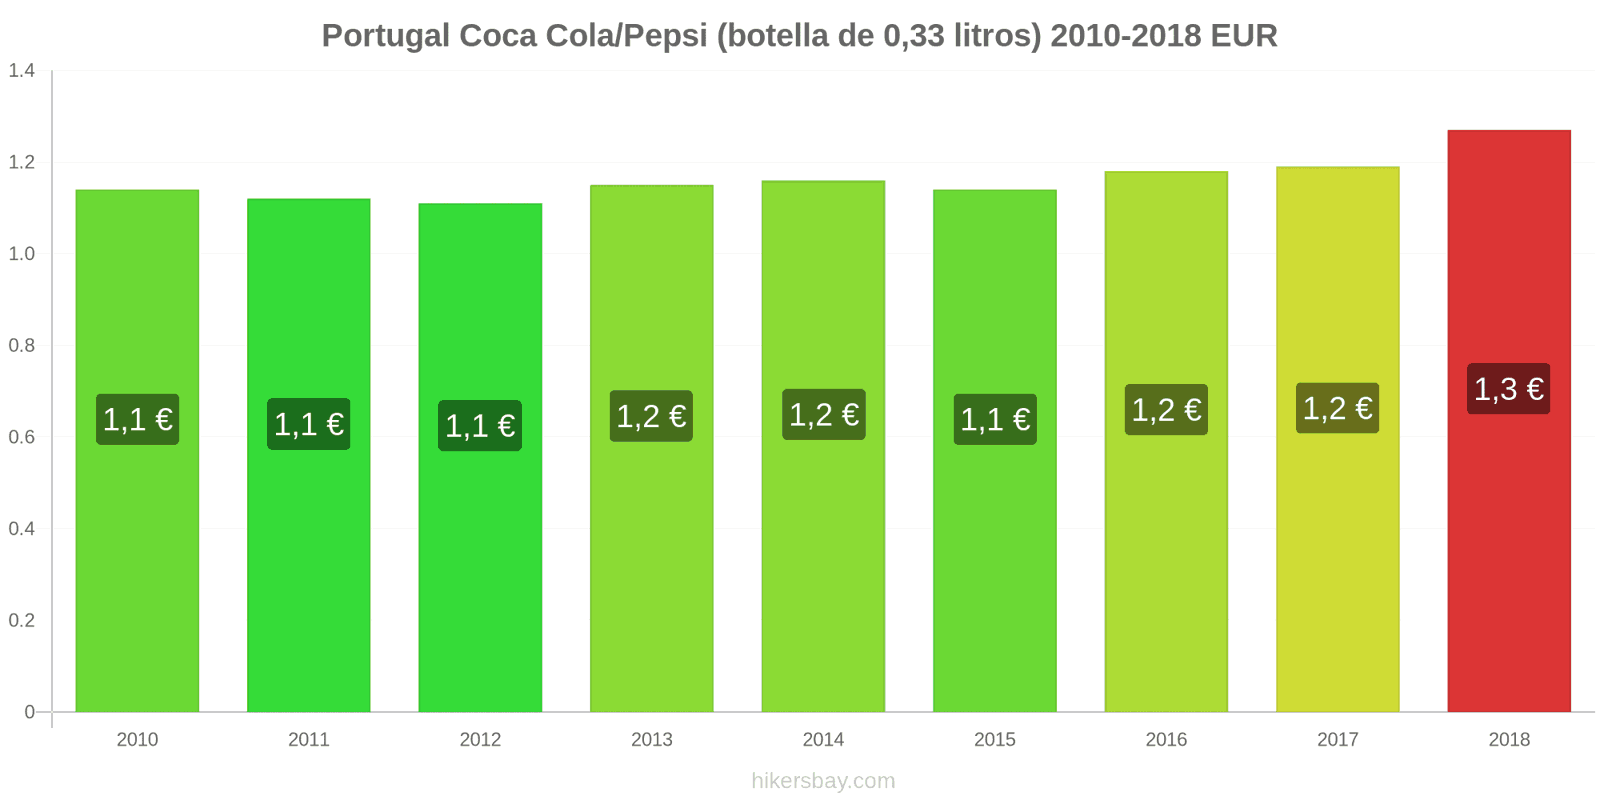 Portugal cambios de precios Coca-Cola/Pepsi (botella de 0.33 litros) hikersbay.com